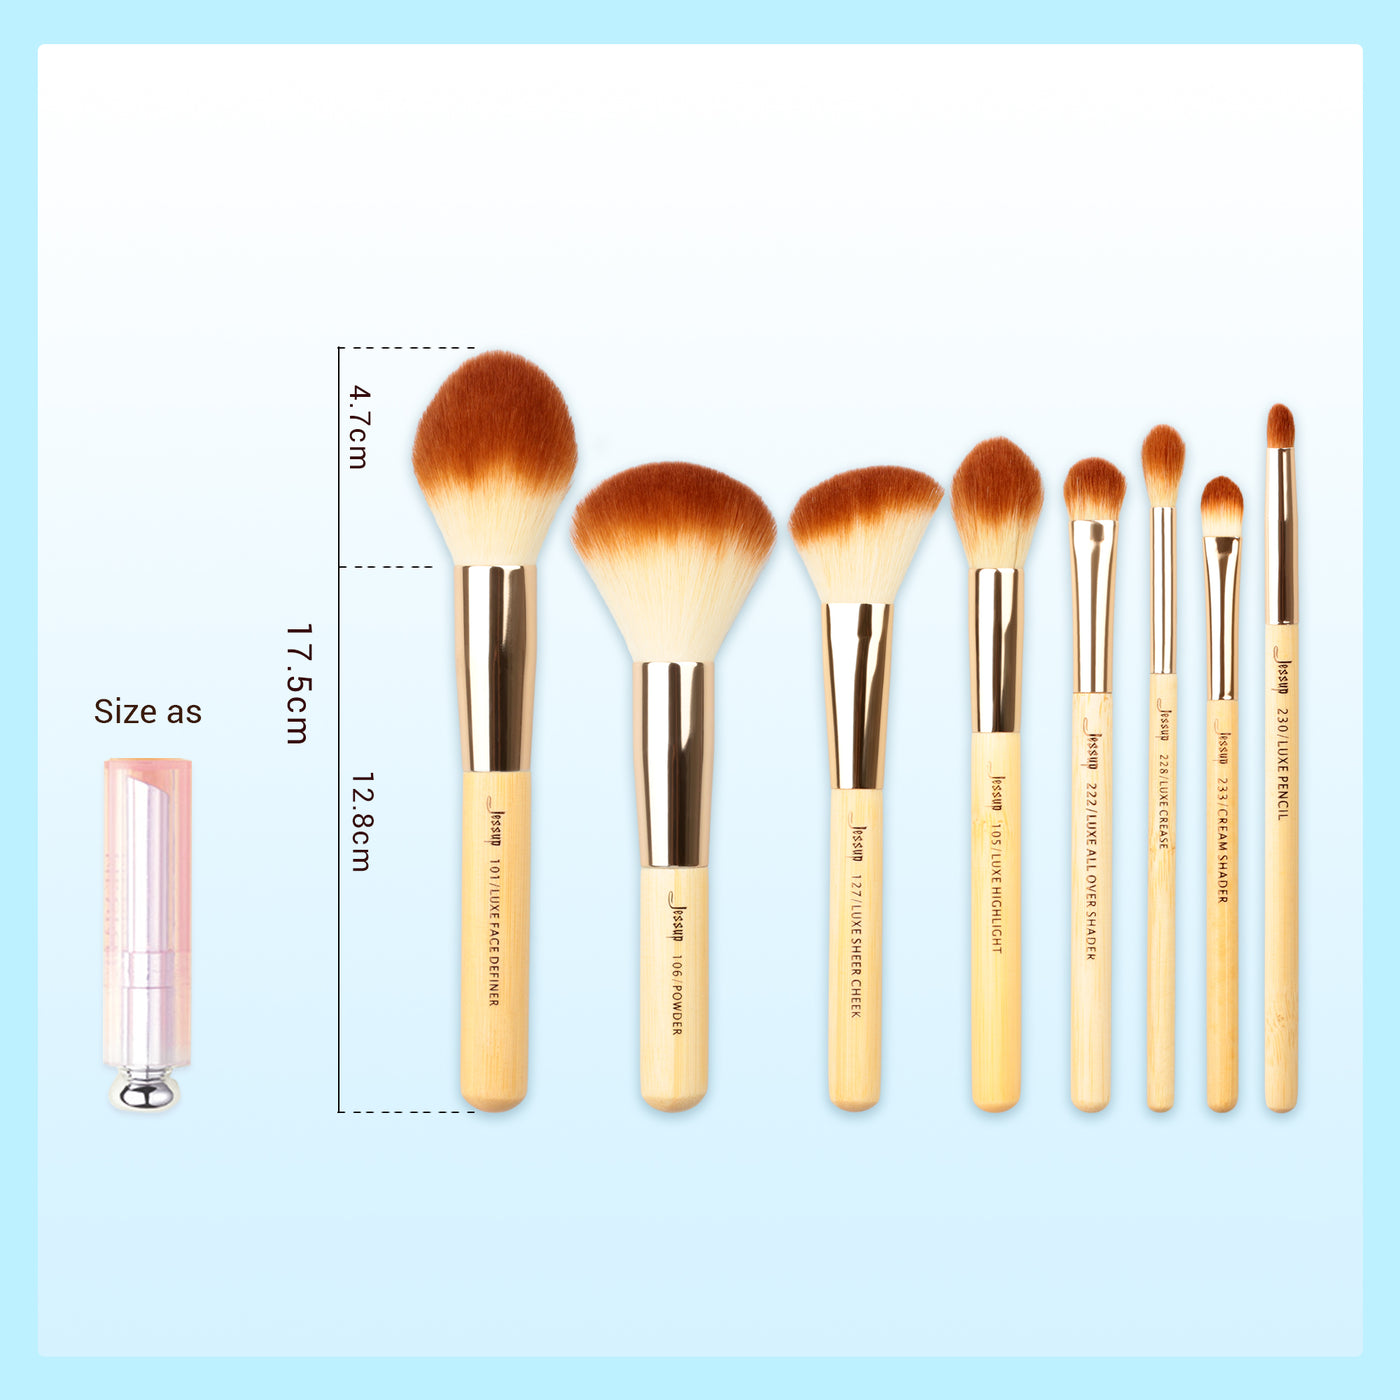 labeled makeup brush set sustainable bamboo 25pcs - Jessup Beauty UK